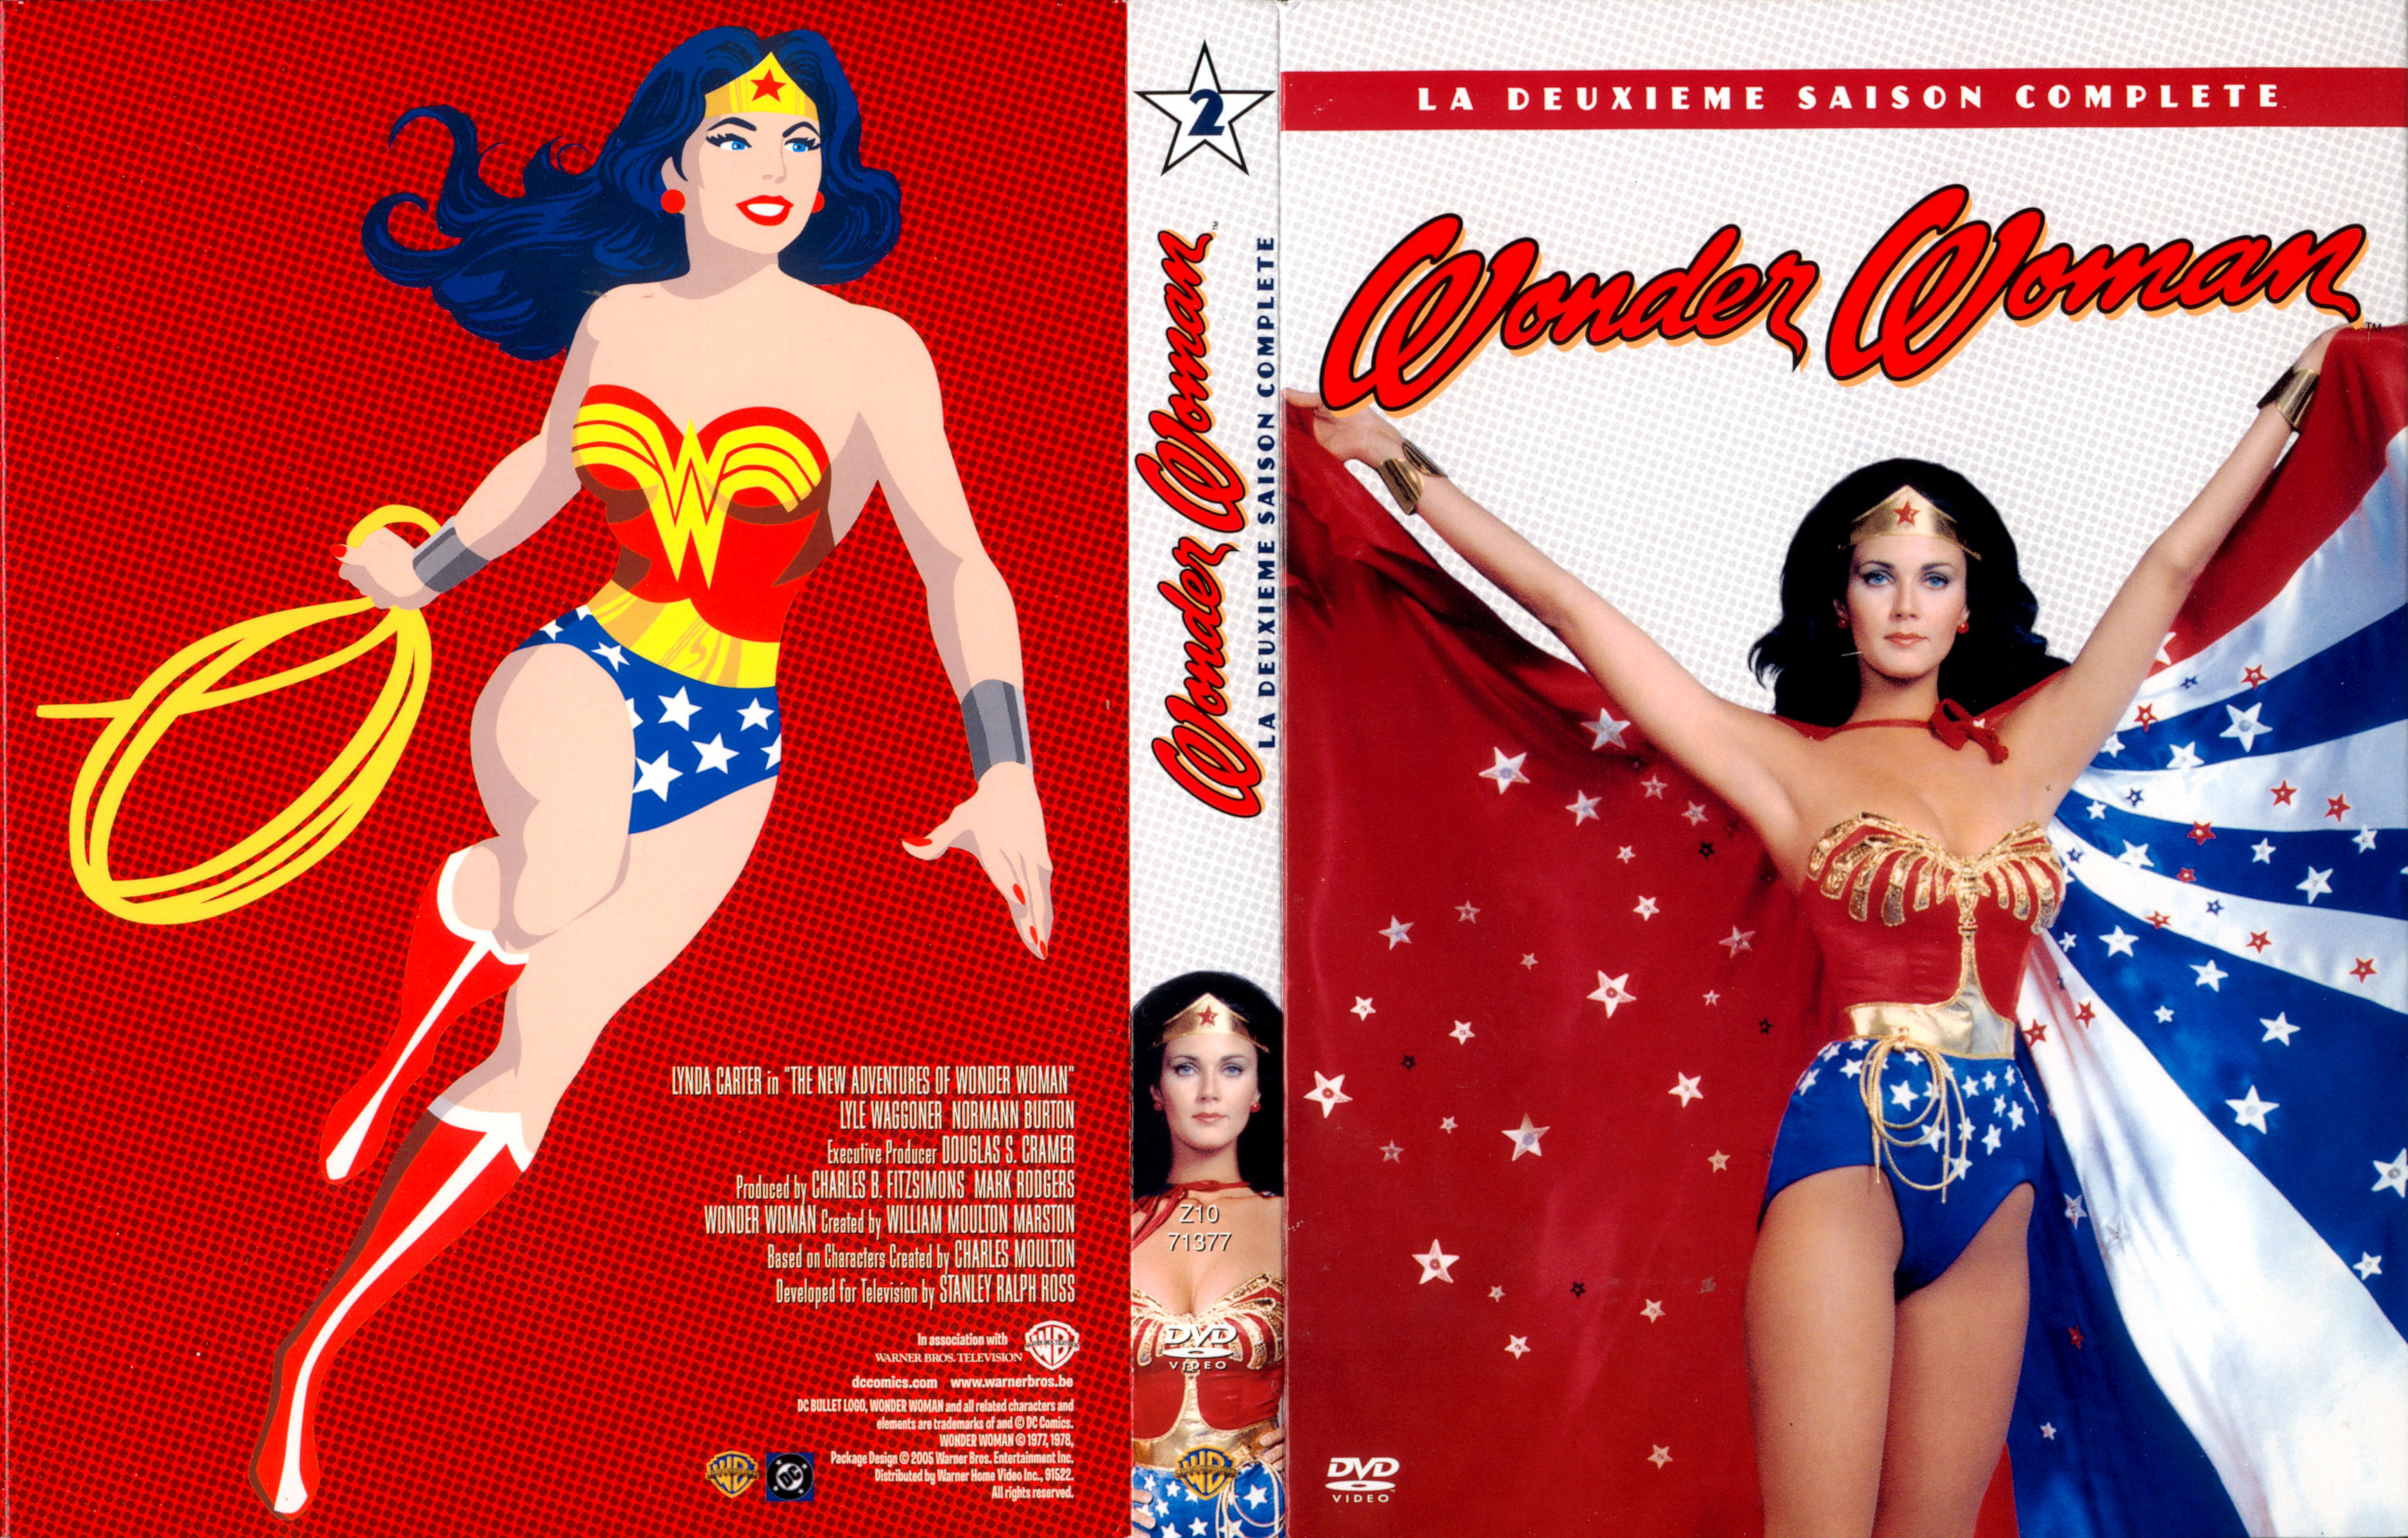 Jaquette DVD Wonder Woman saison 2